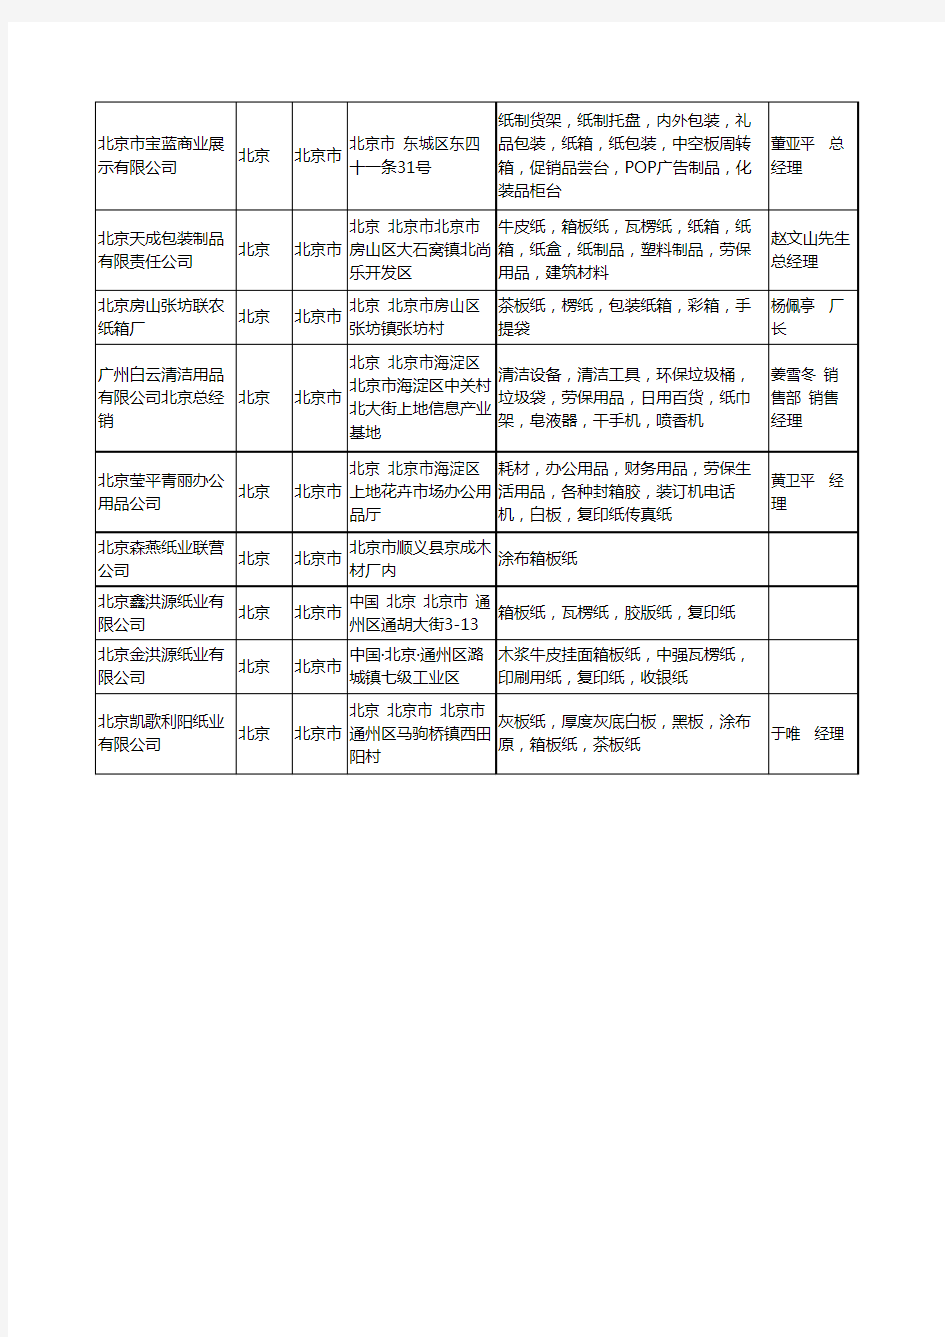 2020新版北京市箱板纸工商企业公司名录名单黄页大全22家